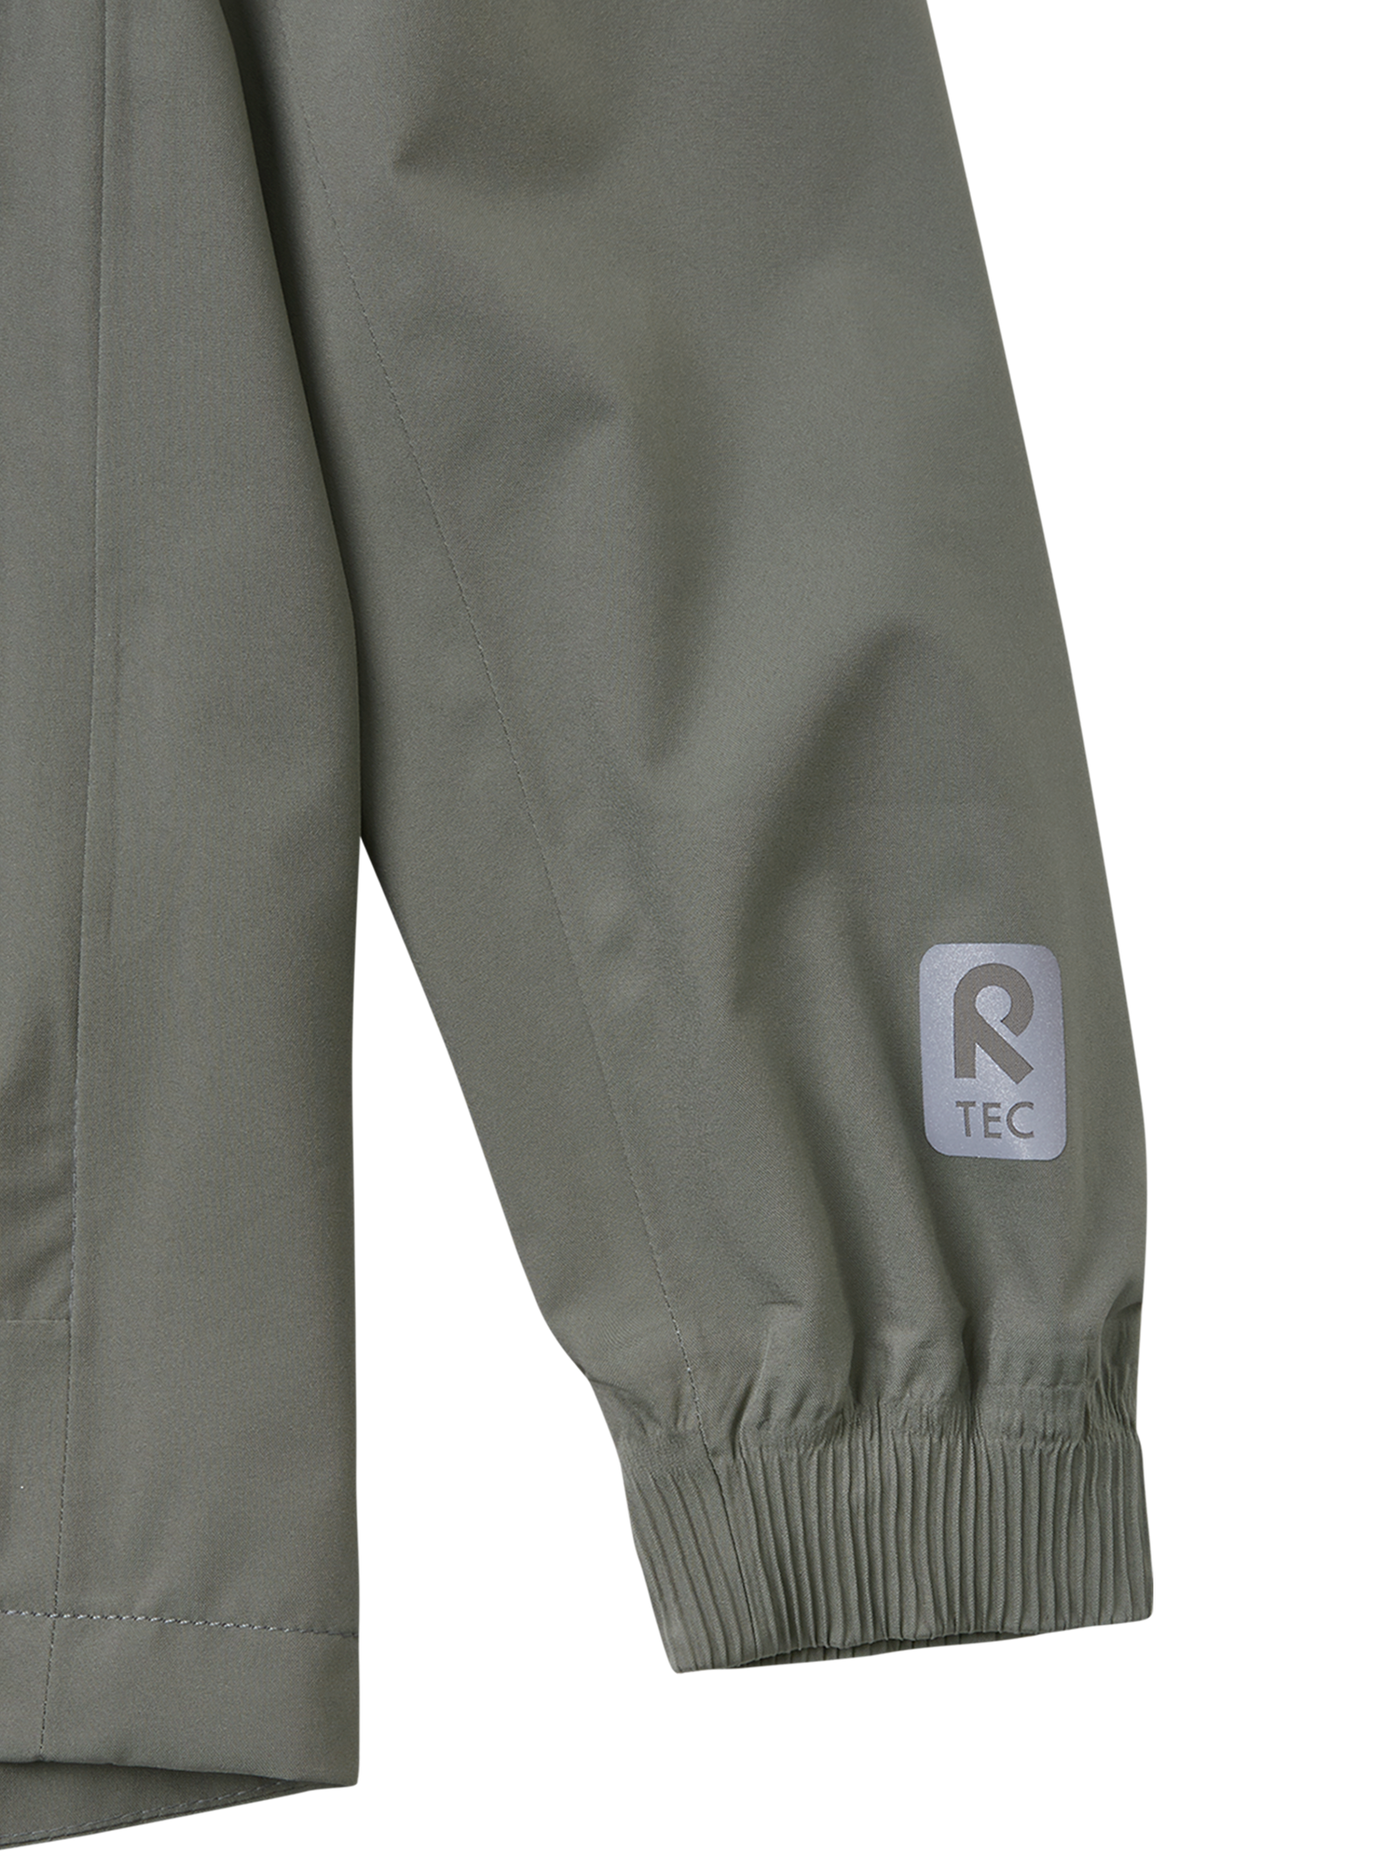 Reima Kumlinge Reimatec takki värissä greyish green lähikuva hihansuun heijastavasta logosta